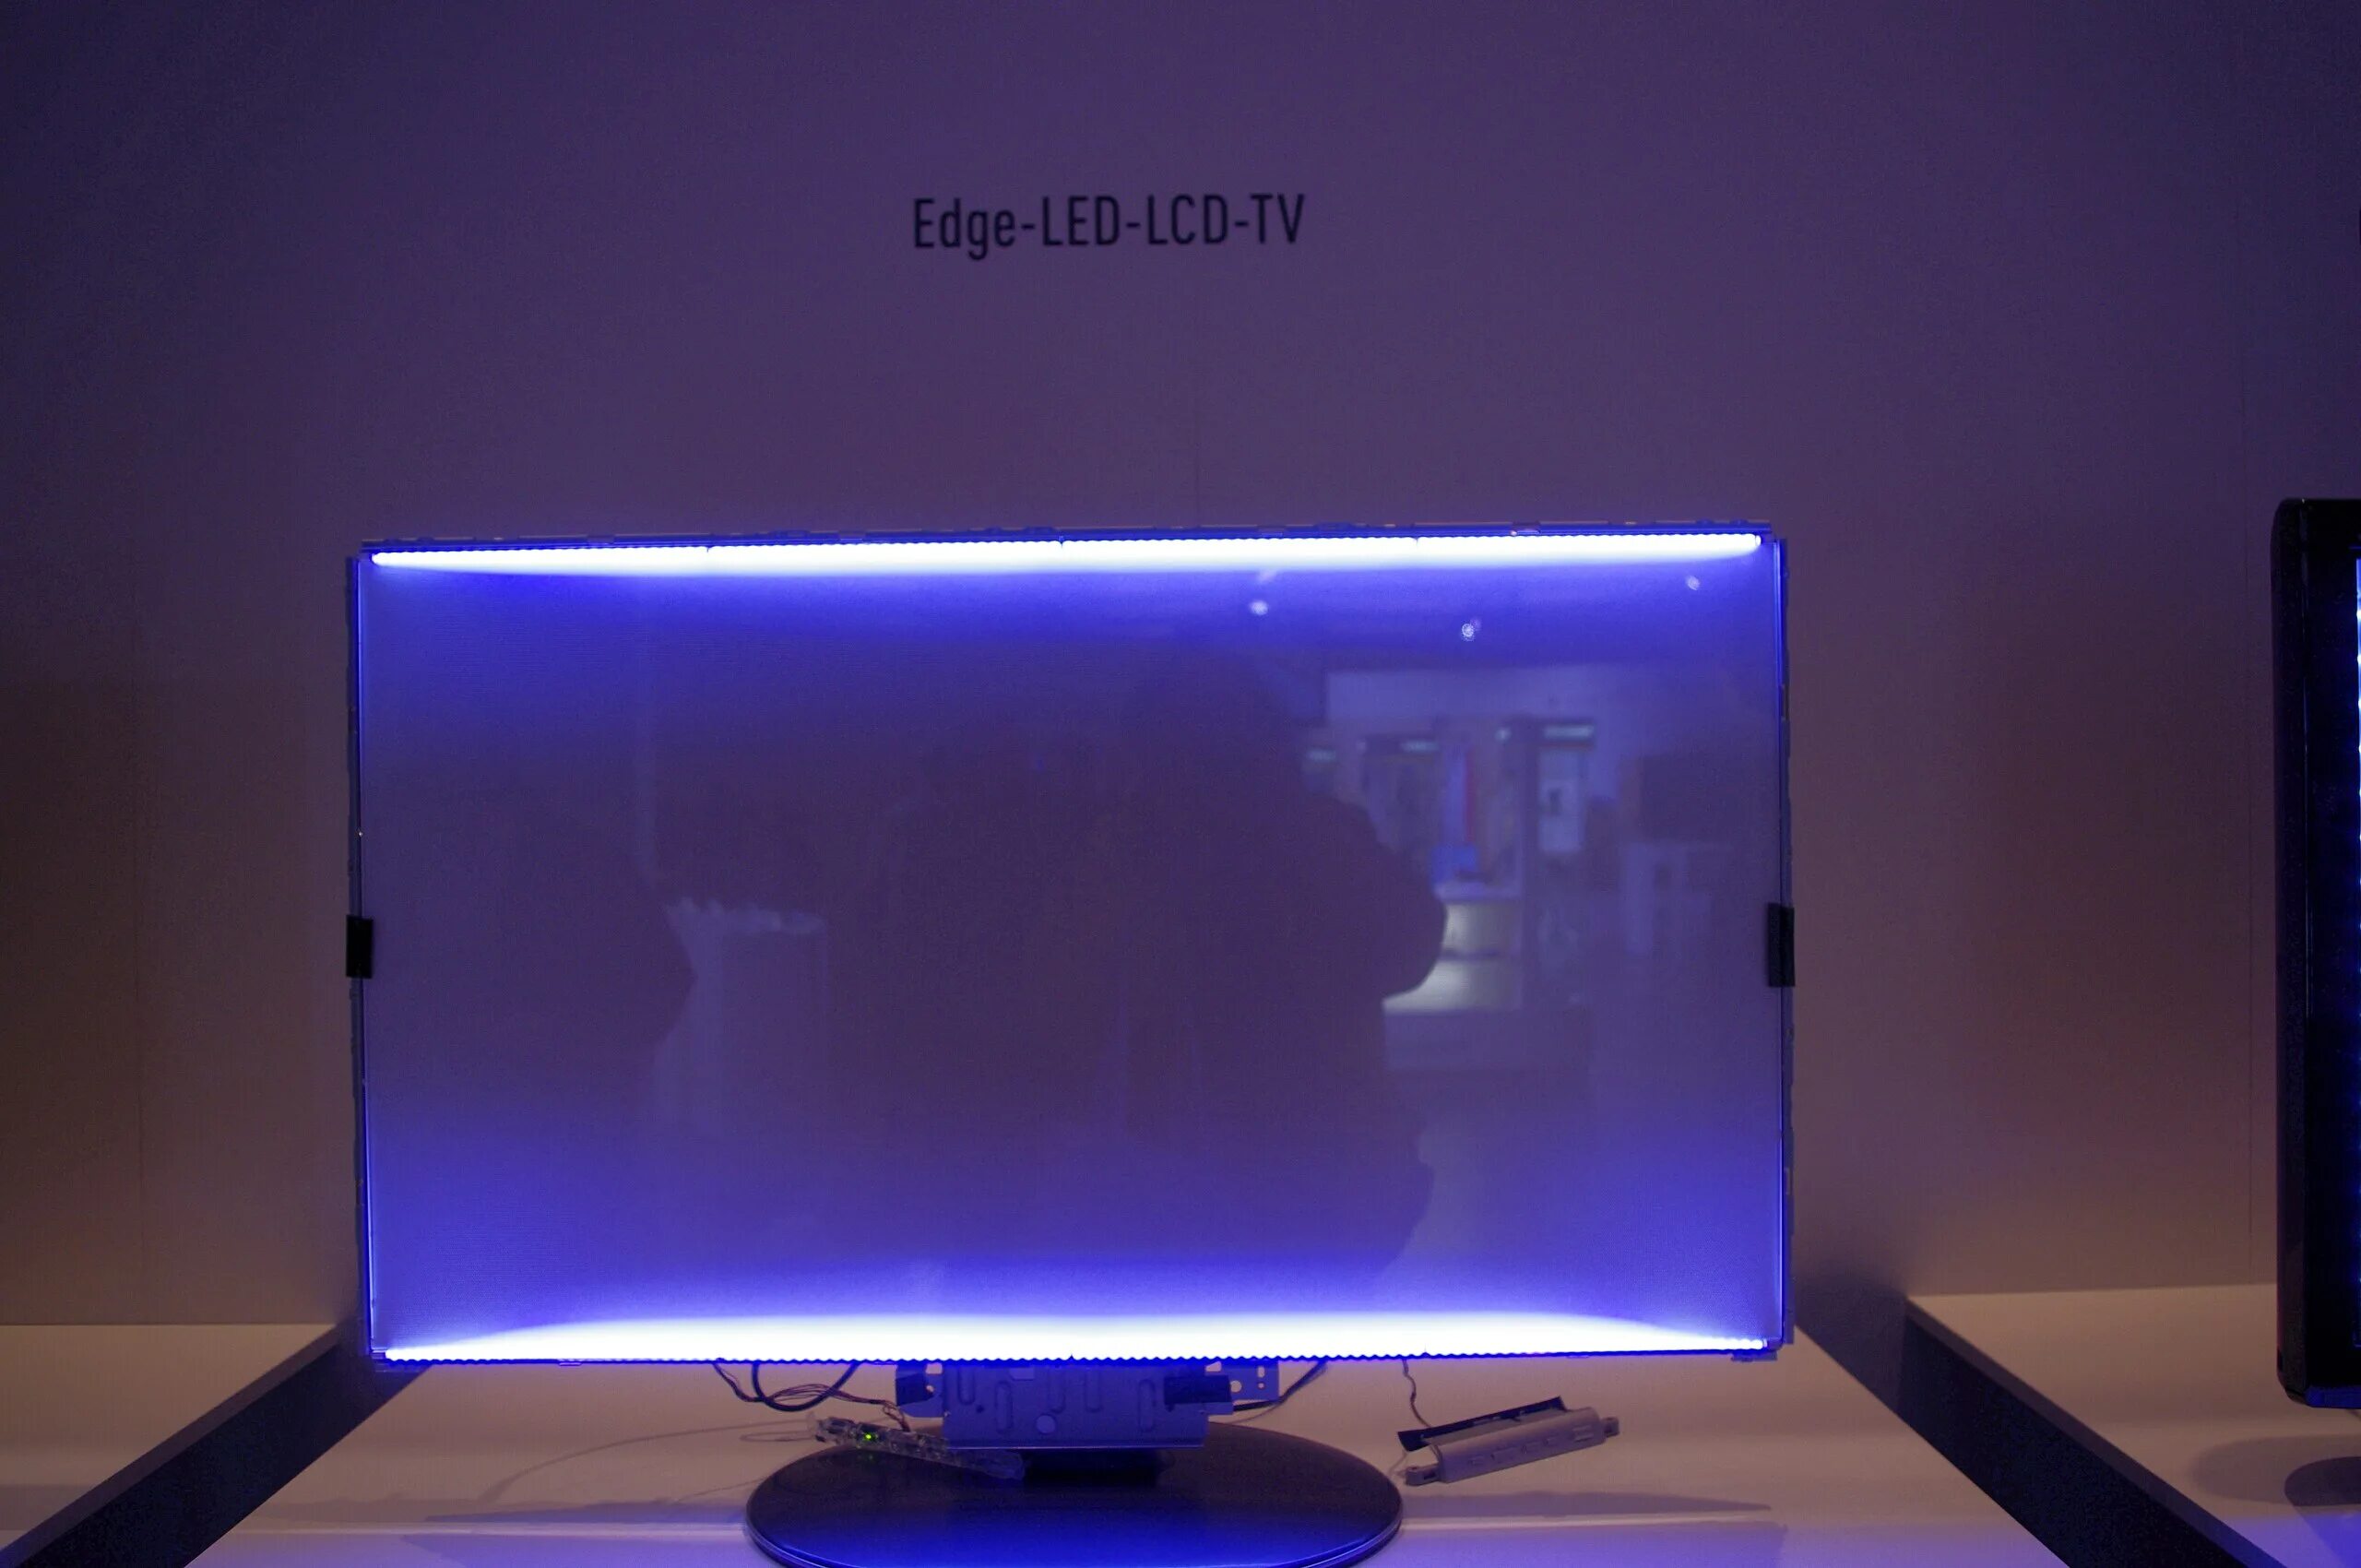 Edge led подсветка Samsung. Подсветка Edge led что это такое в телевизоре. Тип светодиодной подсветки: Edge led. Подсветка direct led что это такое в телевизоре. Светодиоды подсветки телевизоров лед